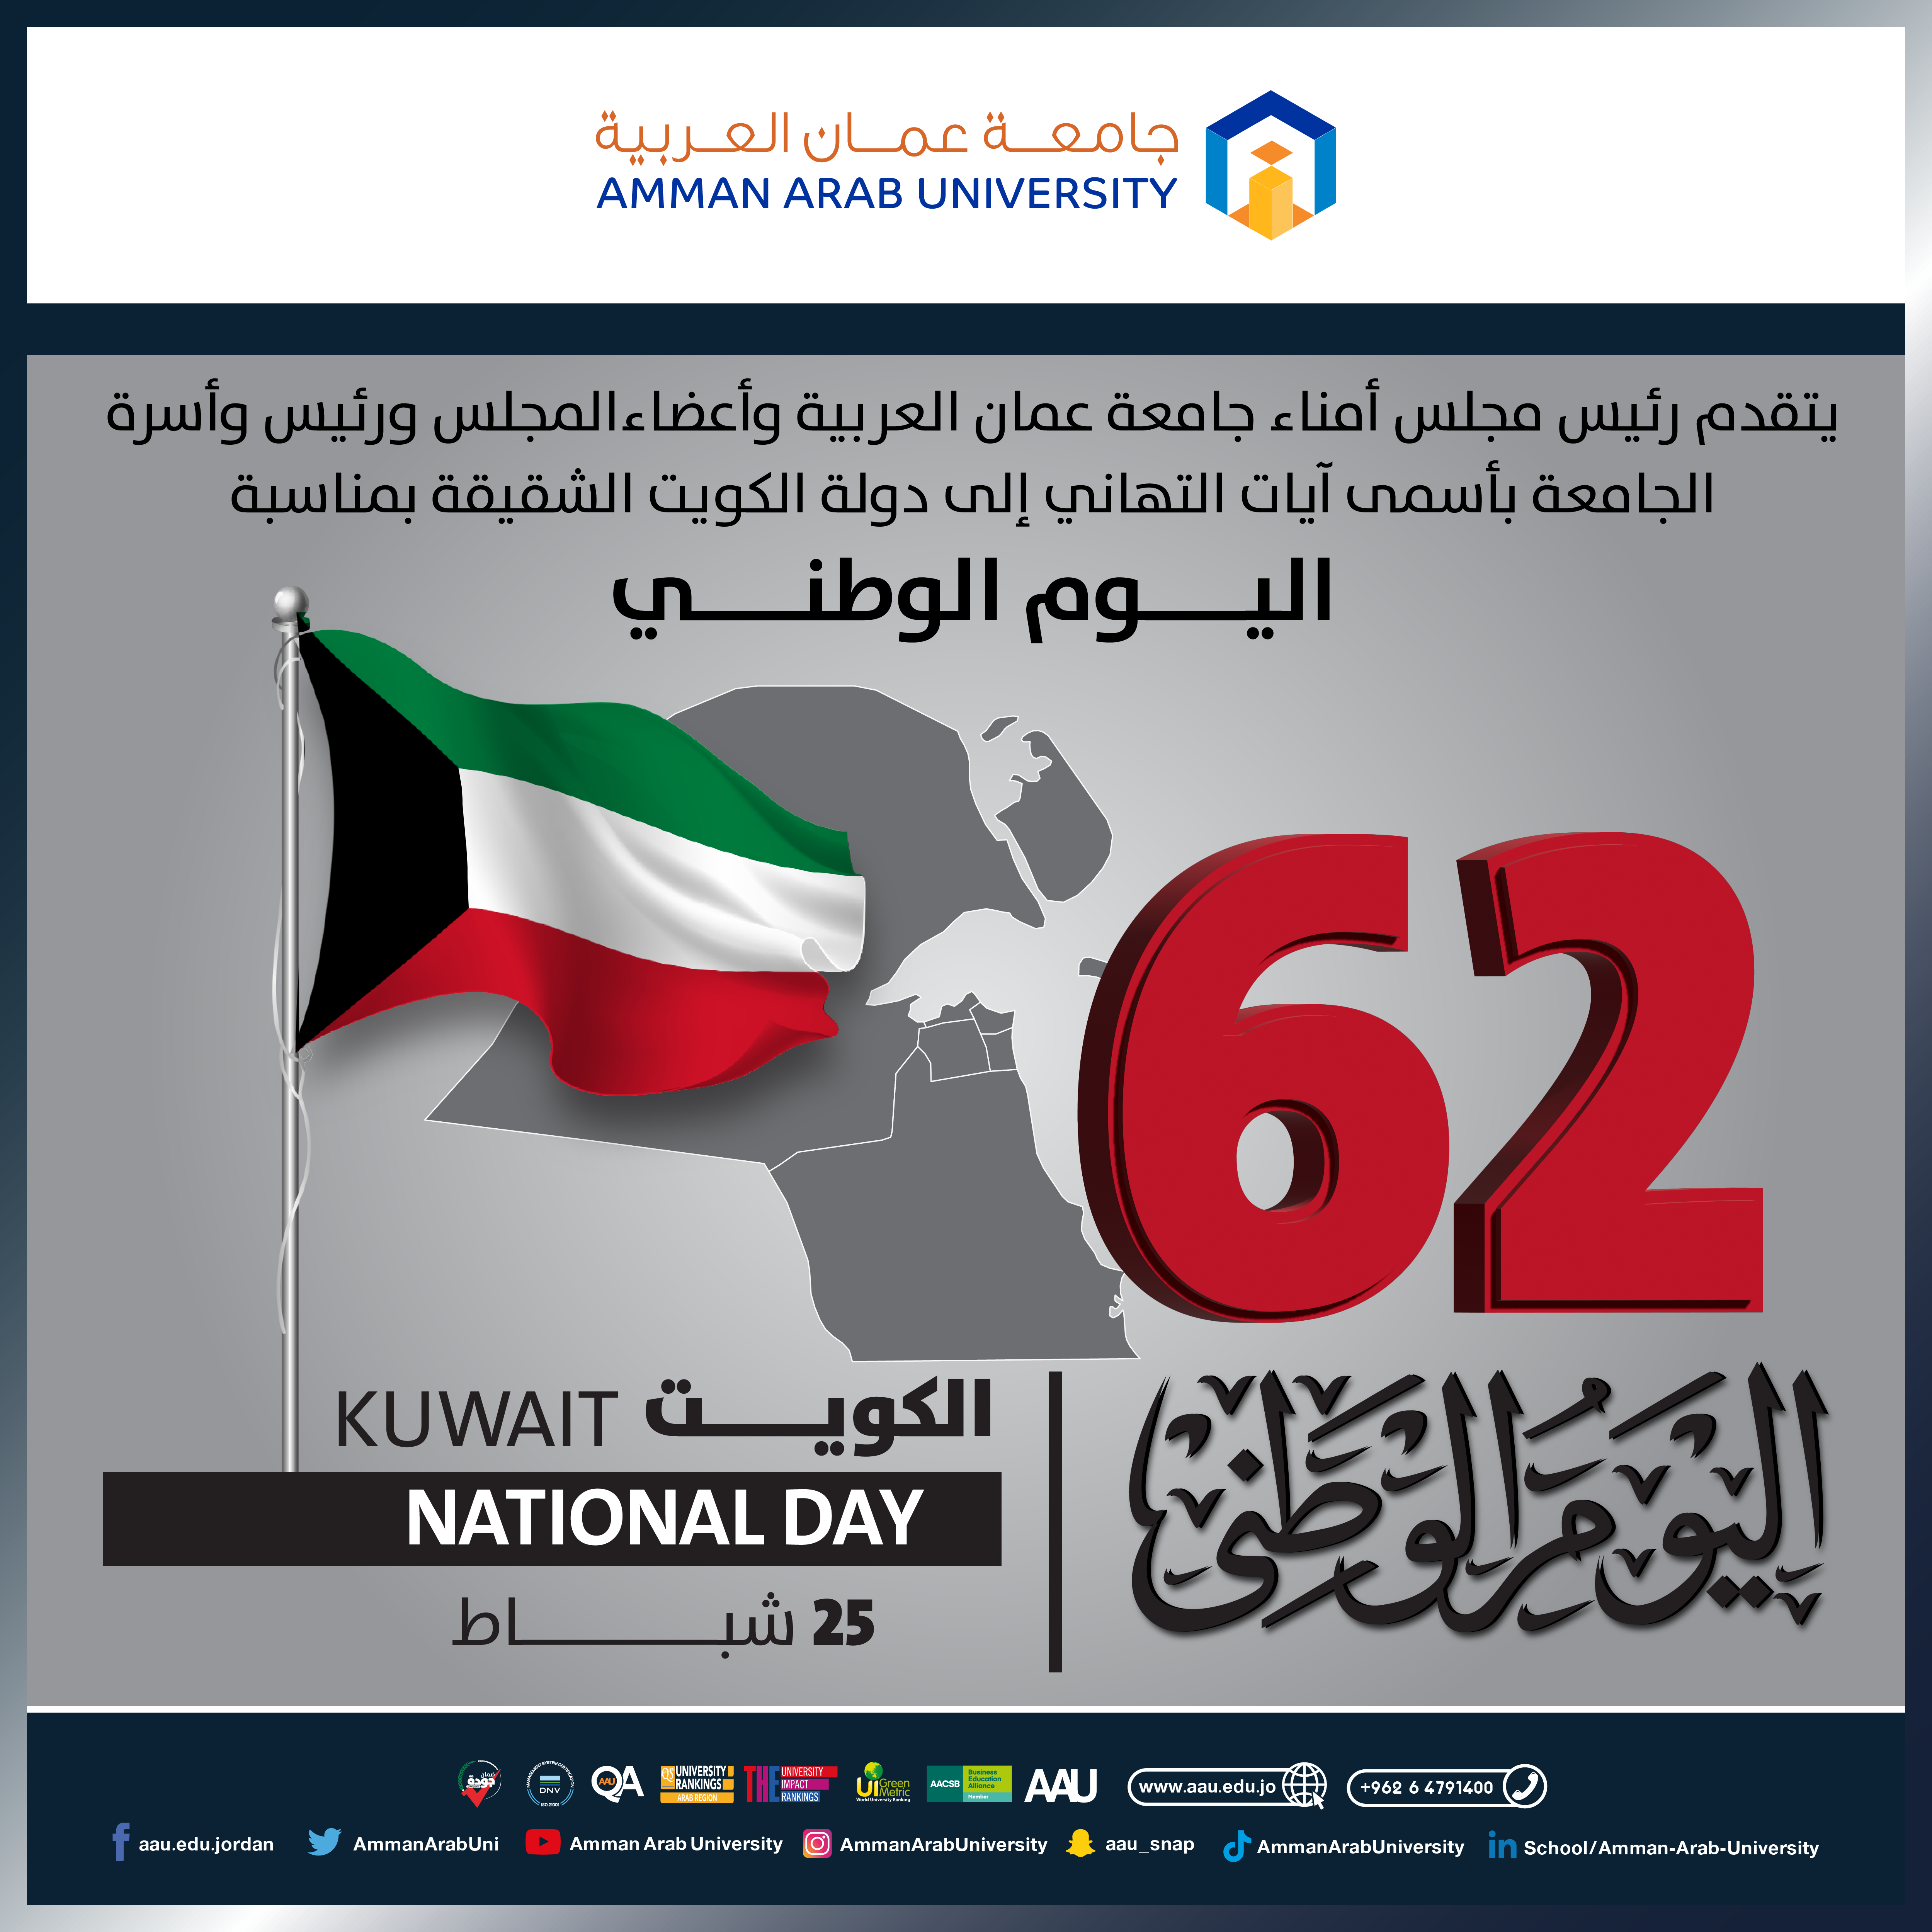  اليوم الوطني لدولة الكويت 